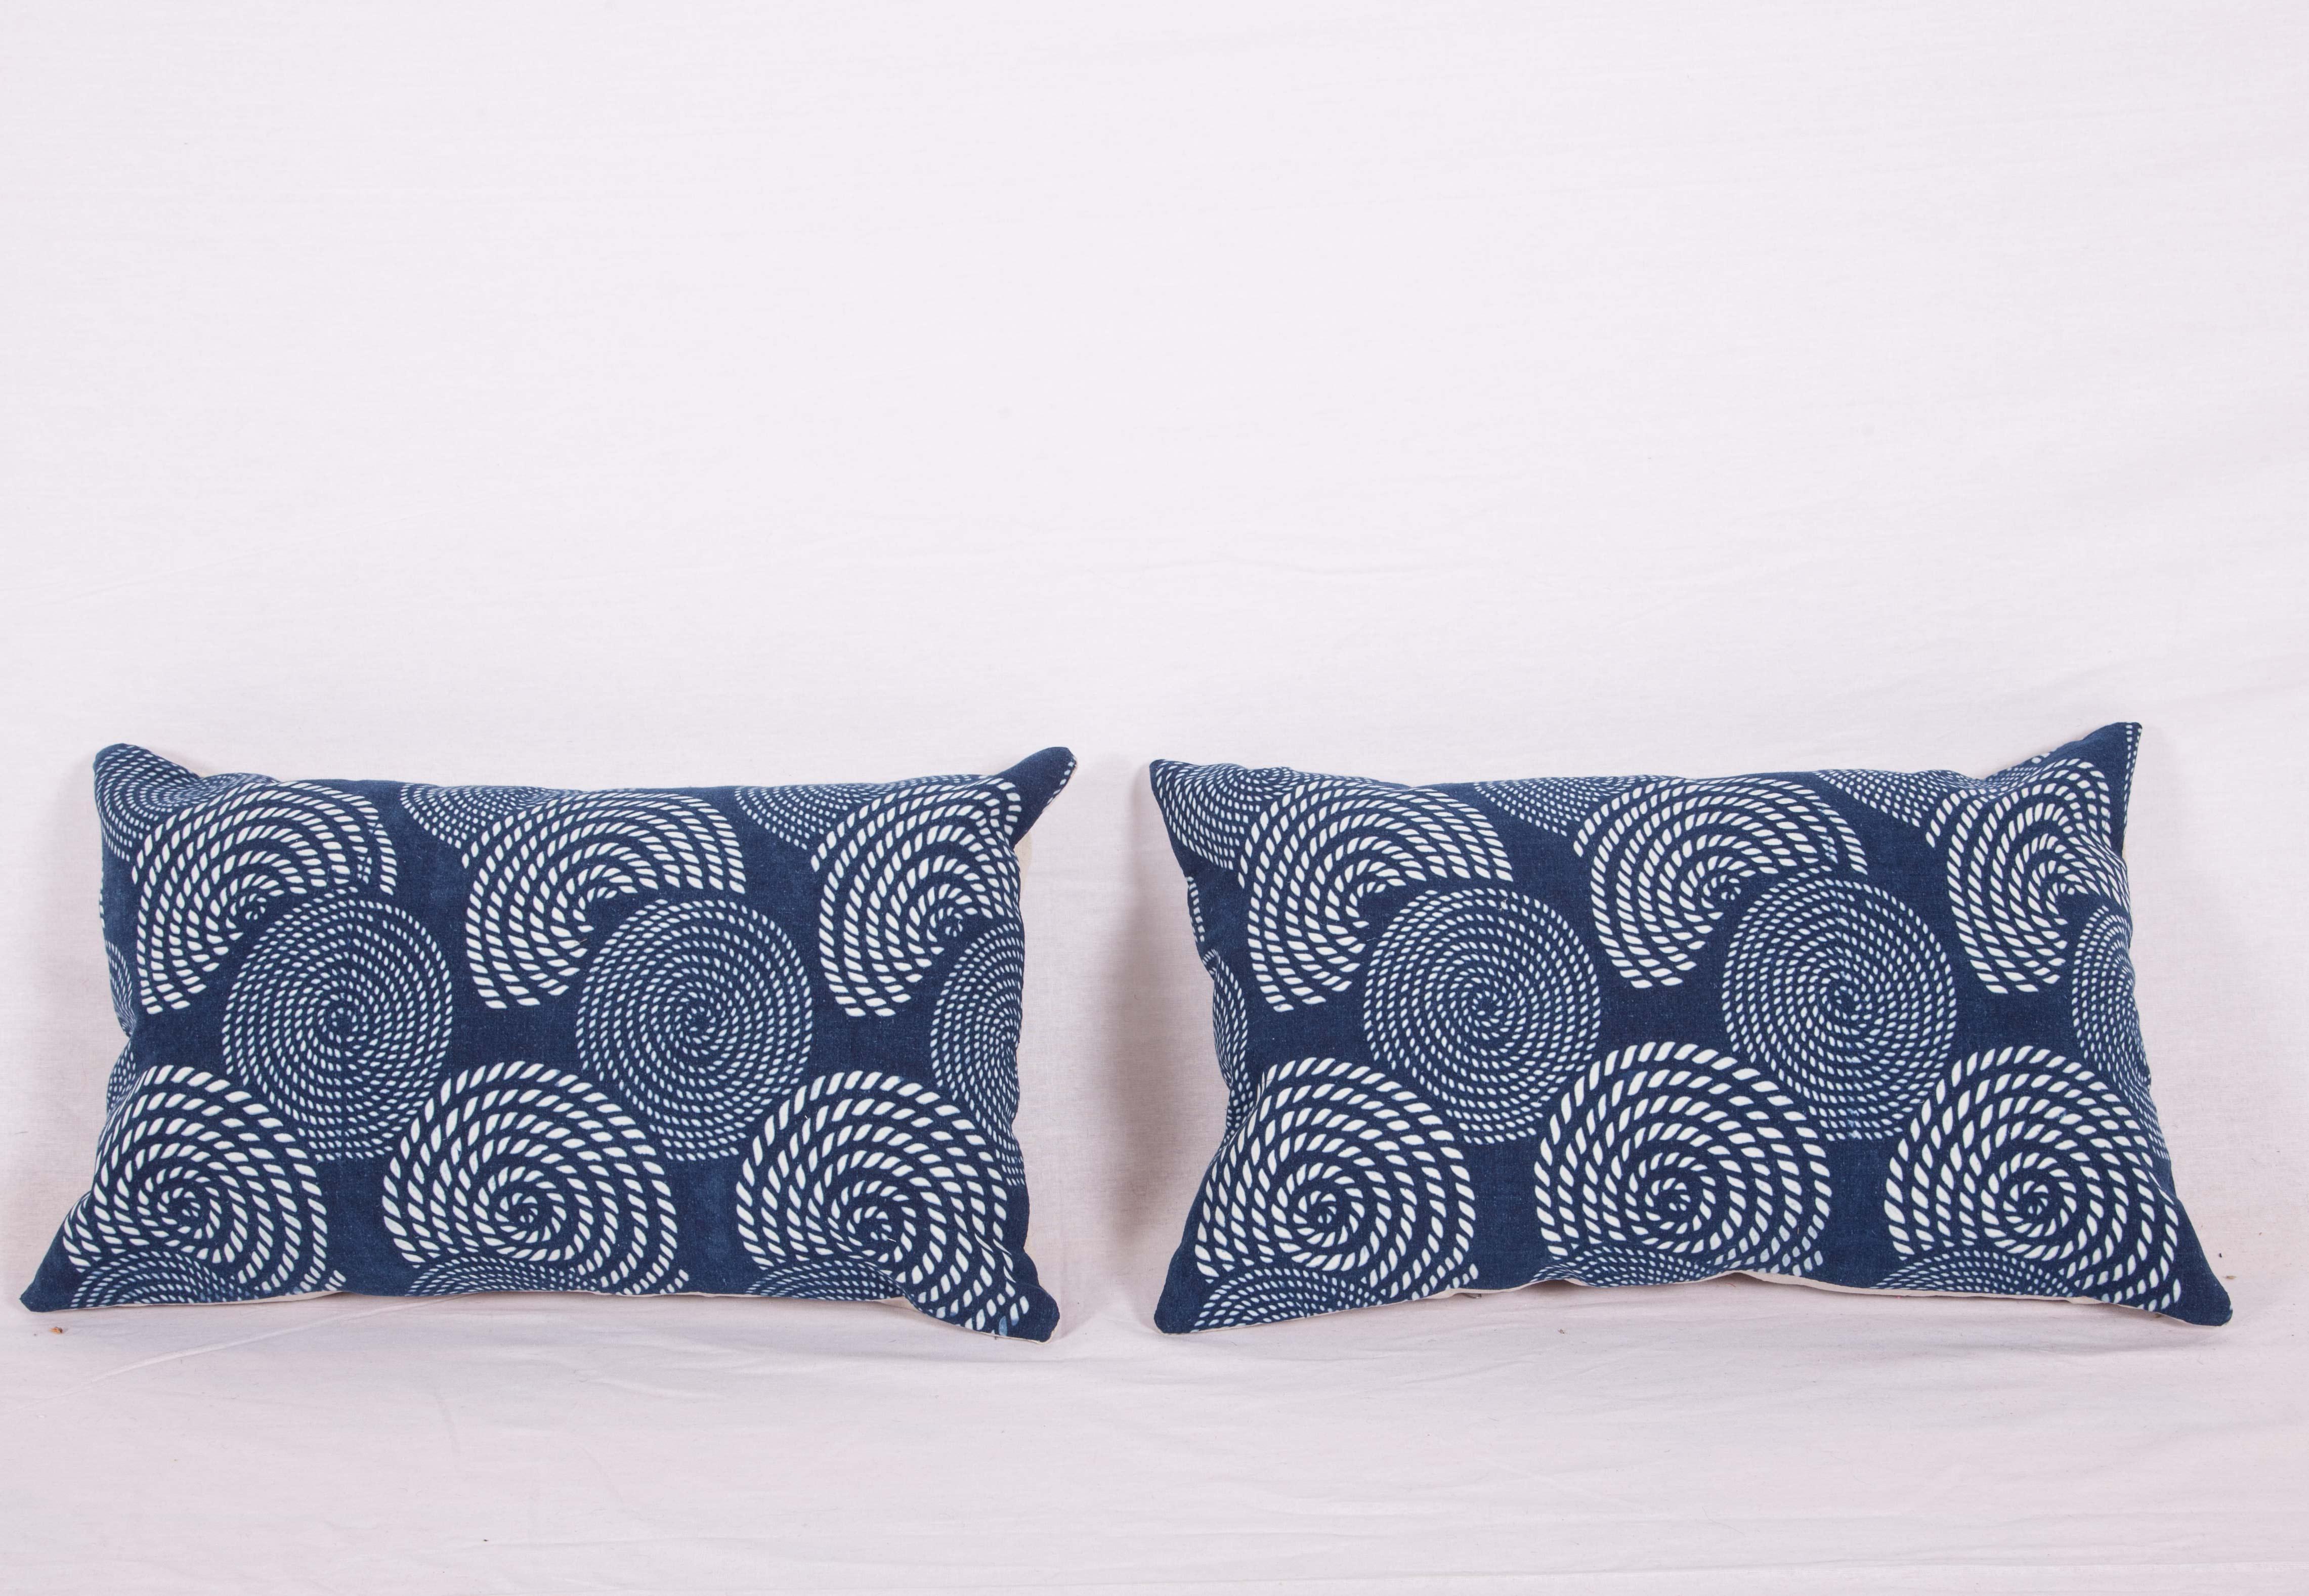 Les oreillers sont fabriqués à partir d'un textile indigo contemporain, le Miao. Ils ne sont pas livrés avec des inserts mais avec des sacs faits à la taille et en coton pour accueillir le remplissage. Le support est en lin. Veuillez noter que le